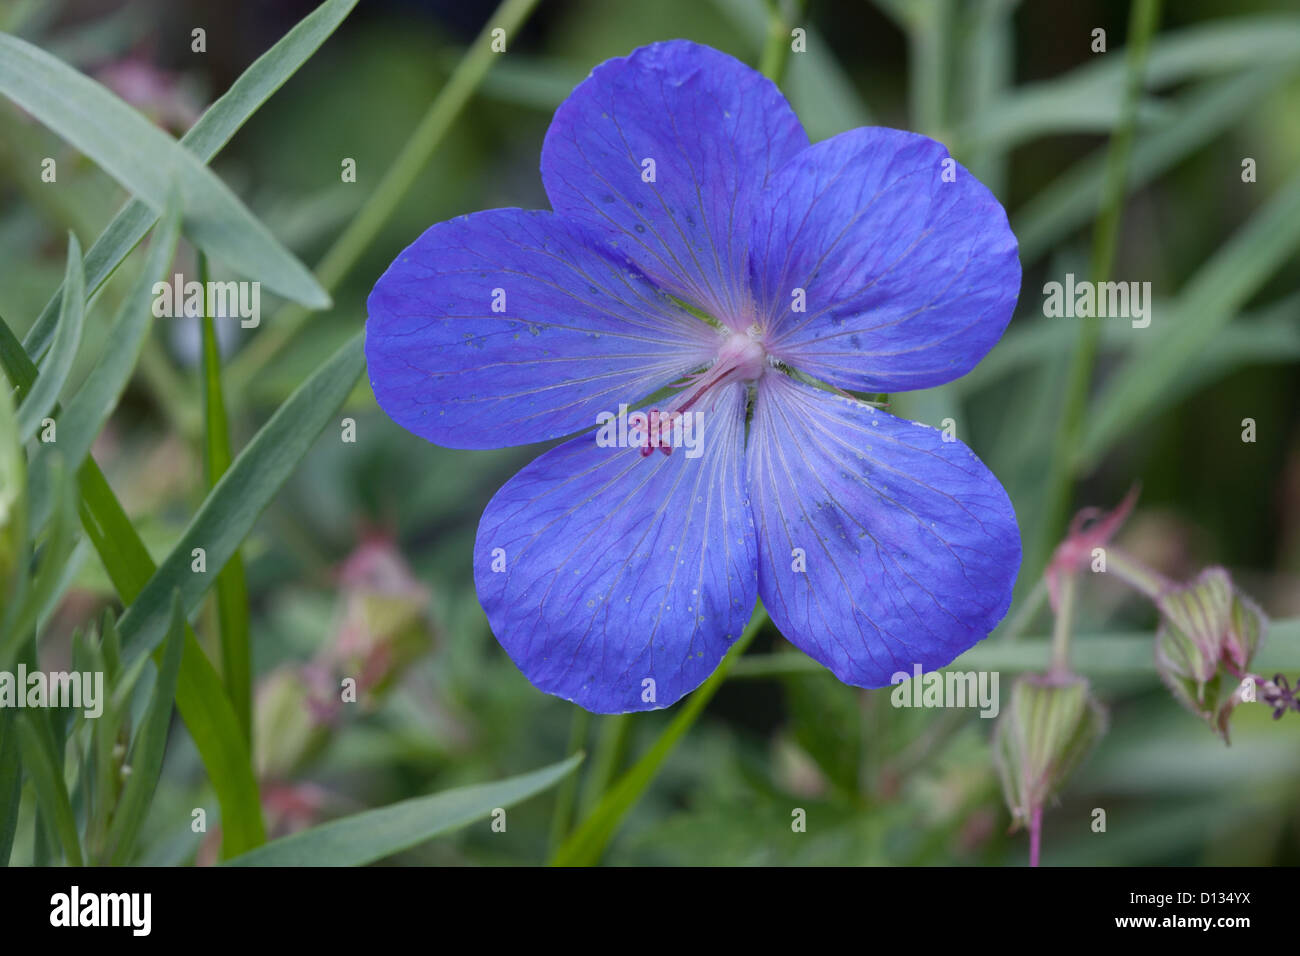 close up of perennial blue geranium flower Stock Photo